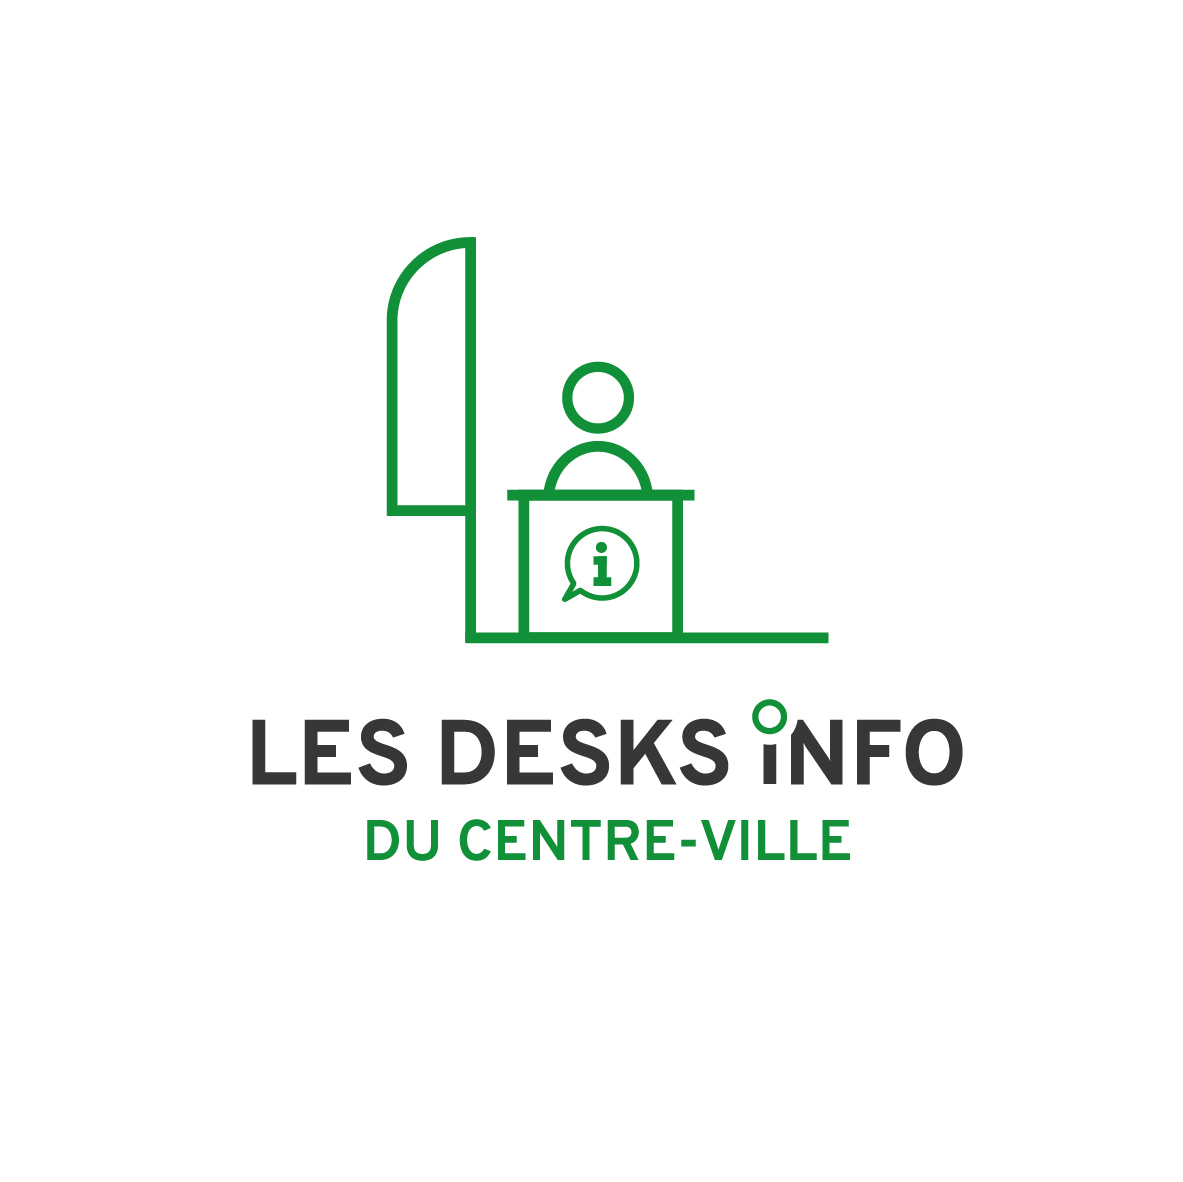 Liège Centre pictogrammes Desk infos 3